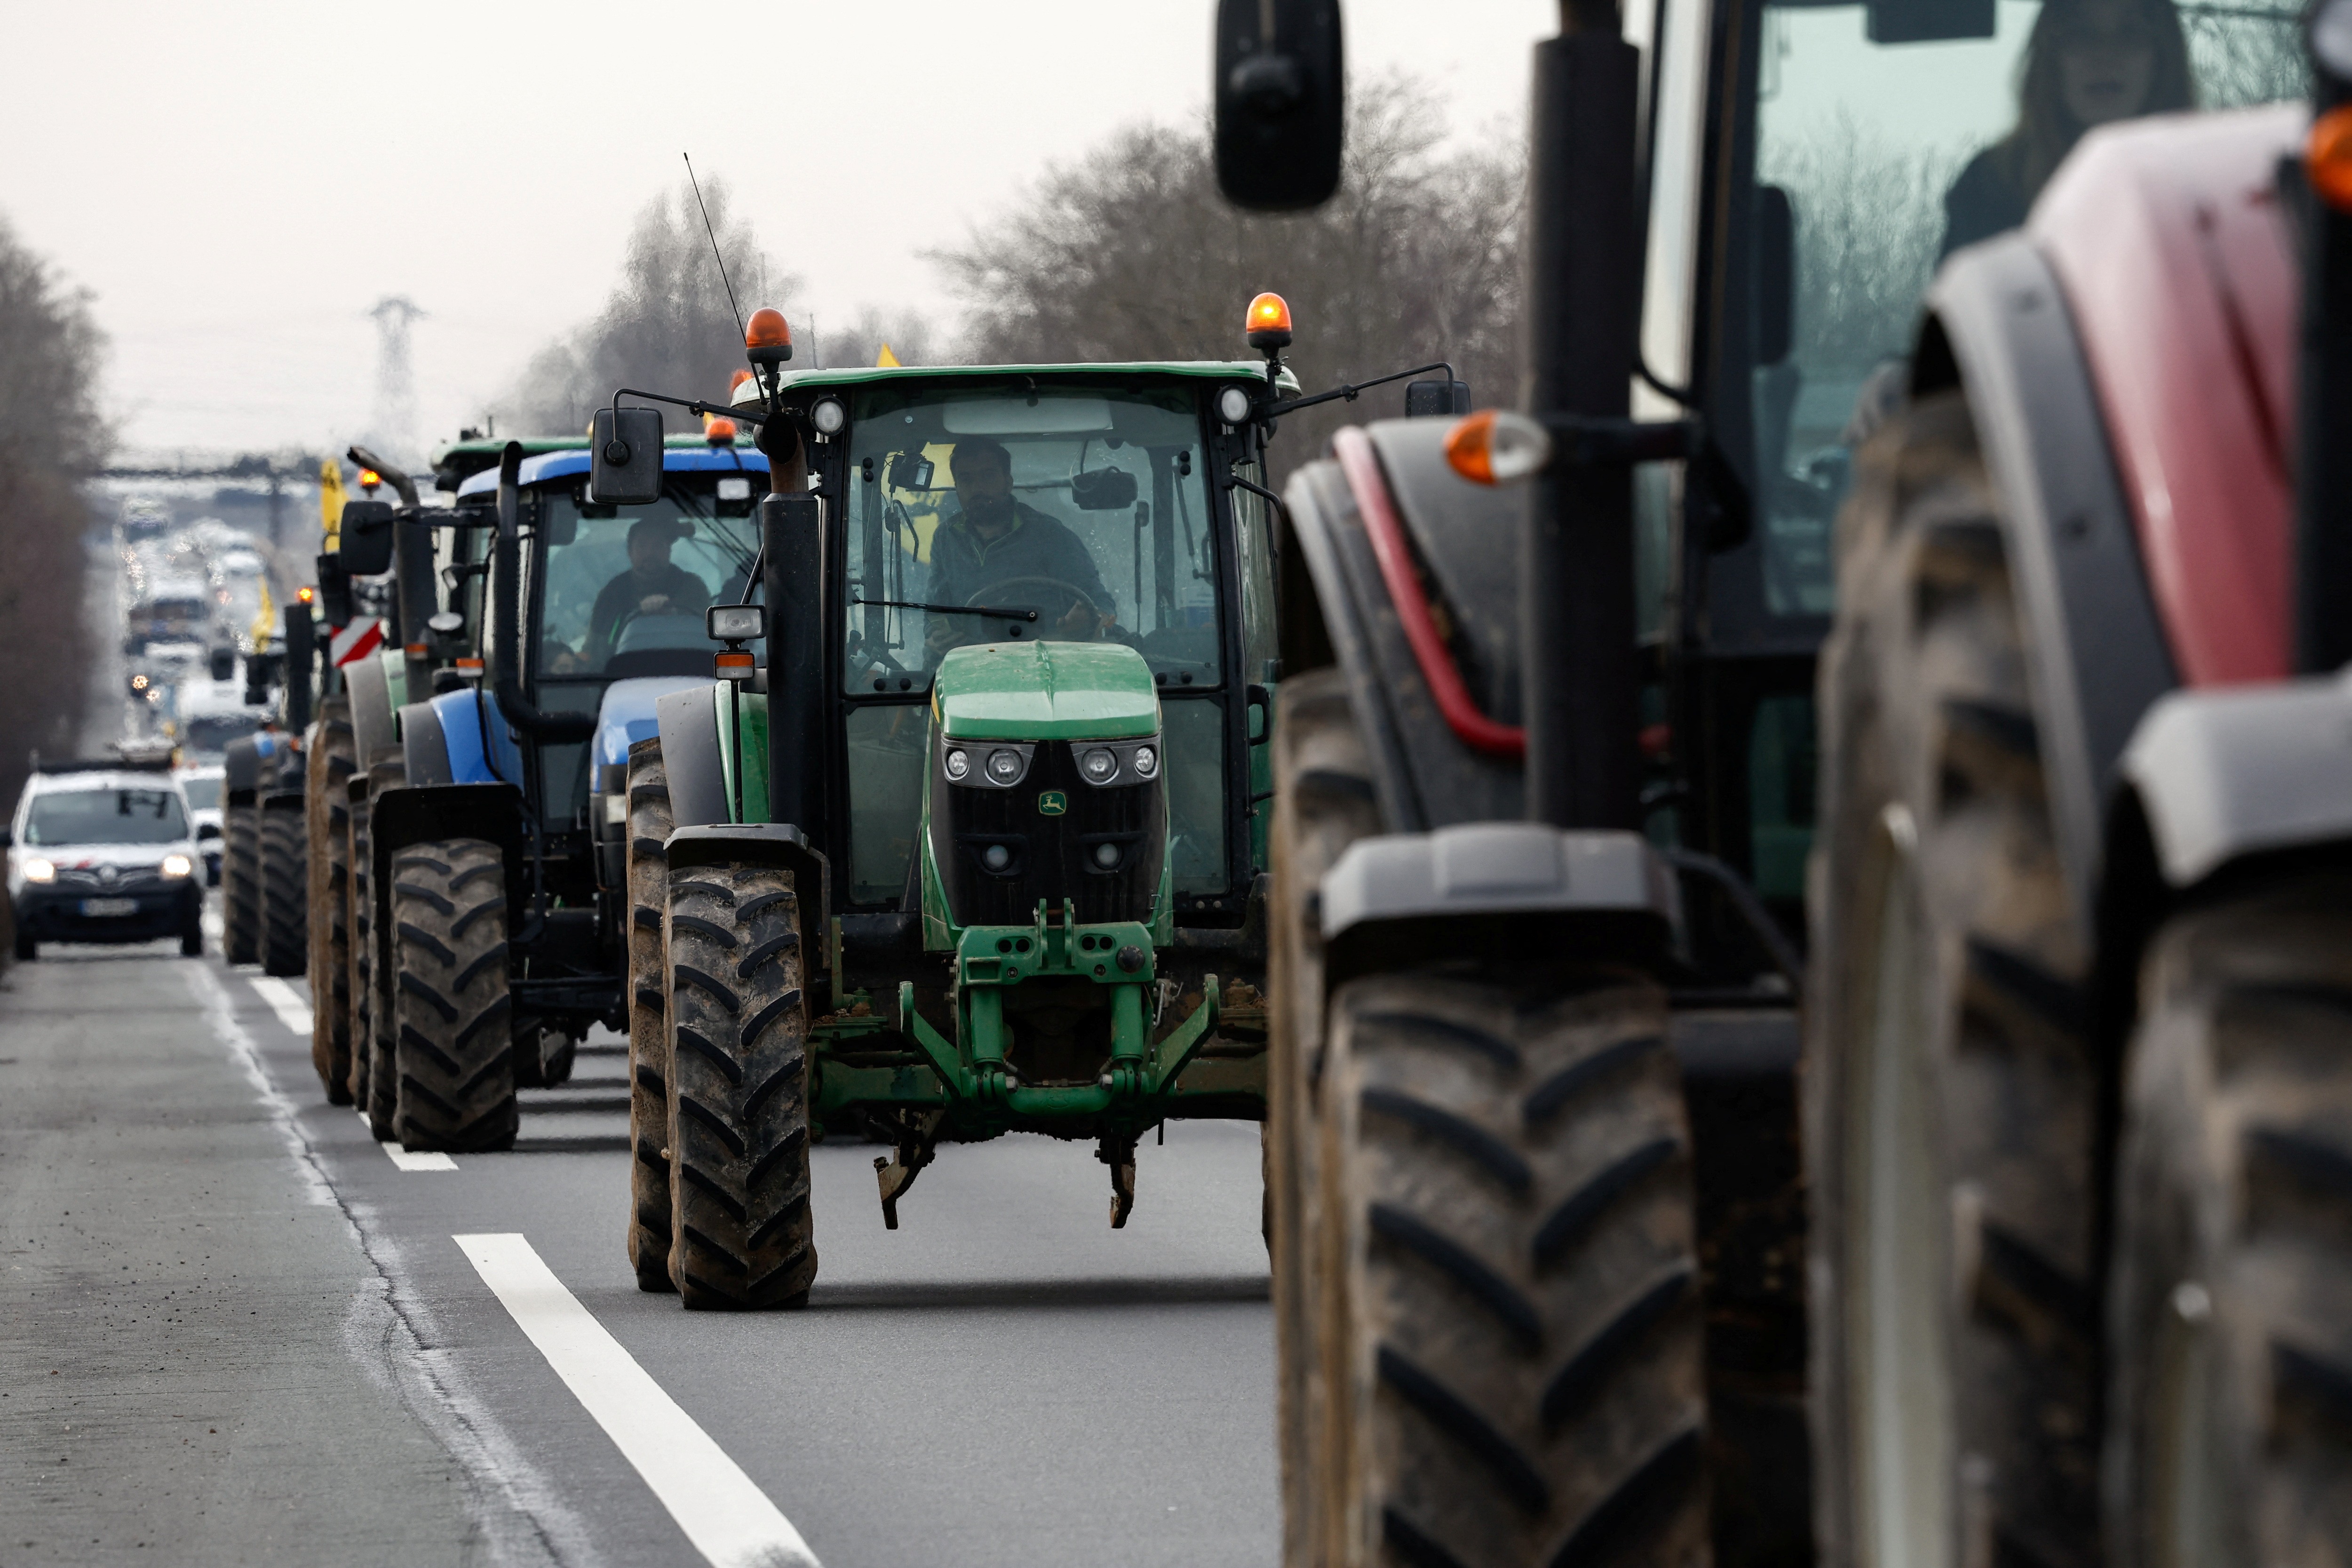 Agriculteurs en colère : le « blocus » de Paris prend forme, une « semaine de tous les dangers », selon la FNSEA